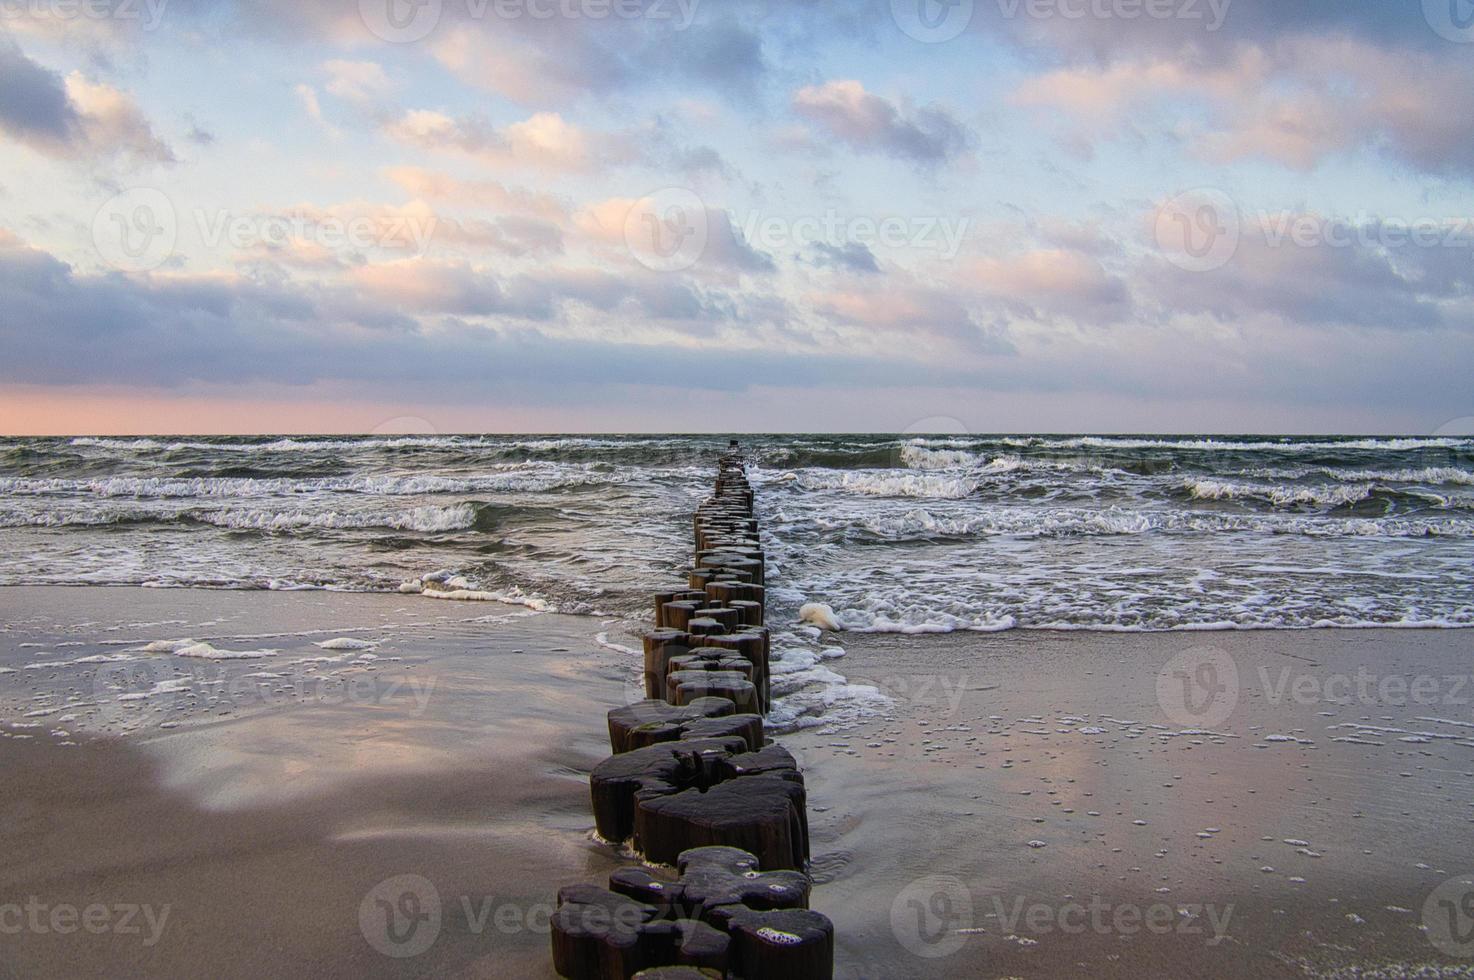 épis sur la plage de la mer baltique à zingst. les vagues se brisent sur le bois photo